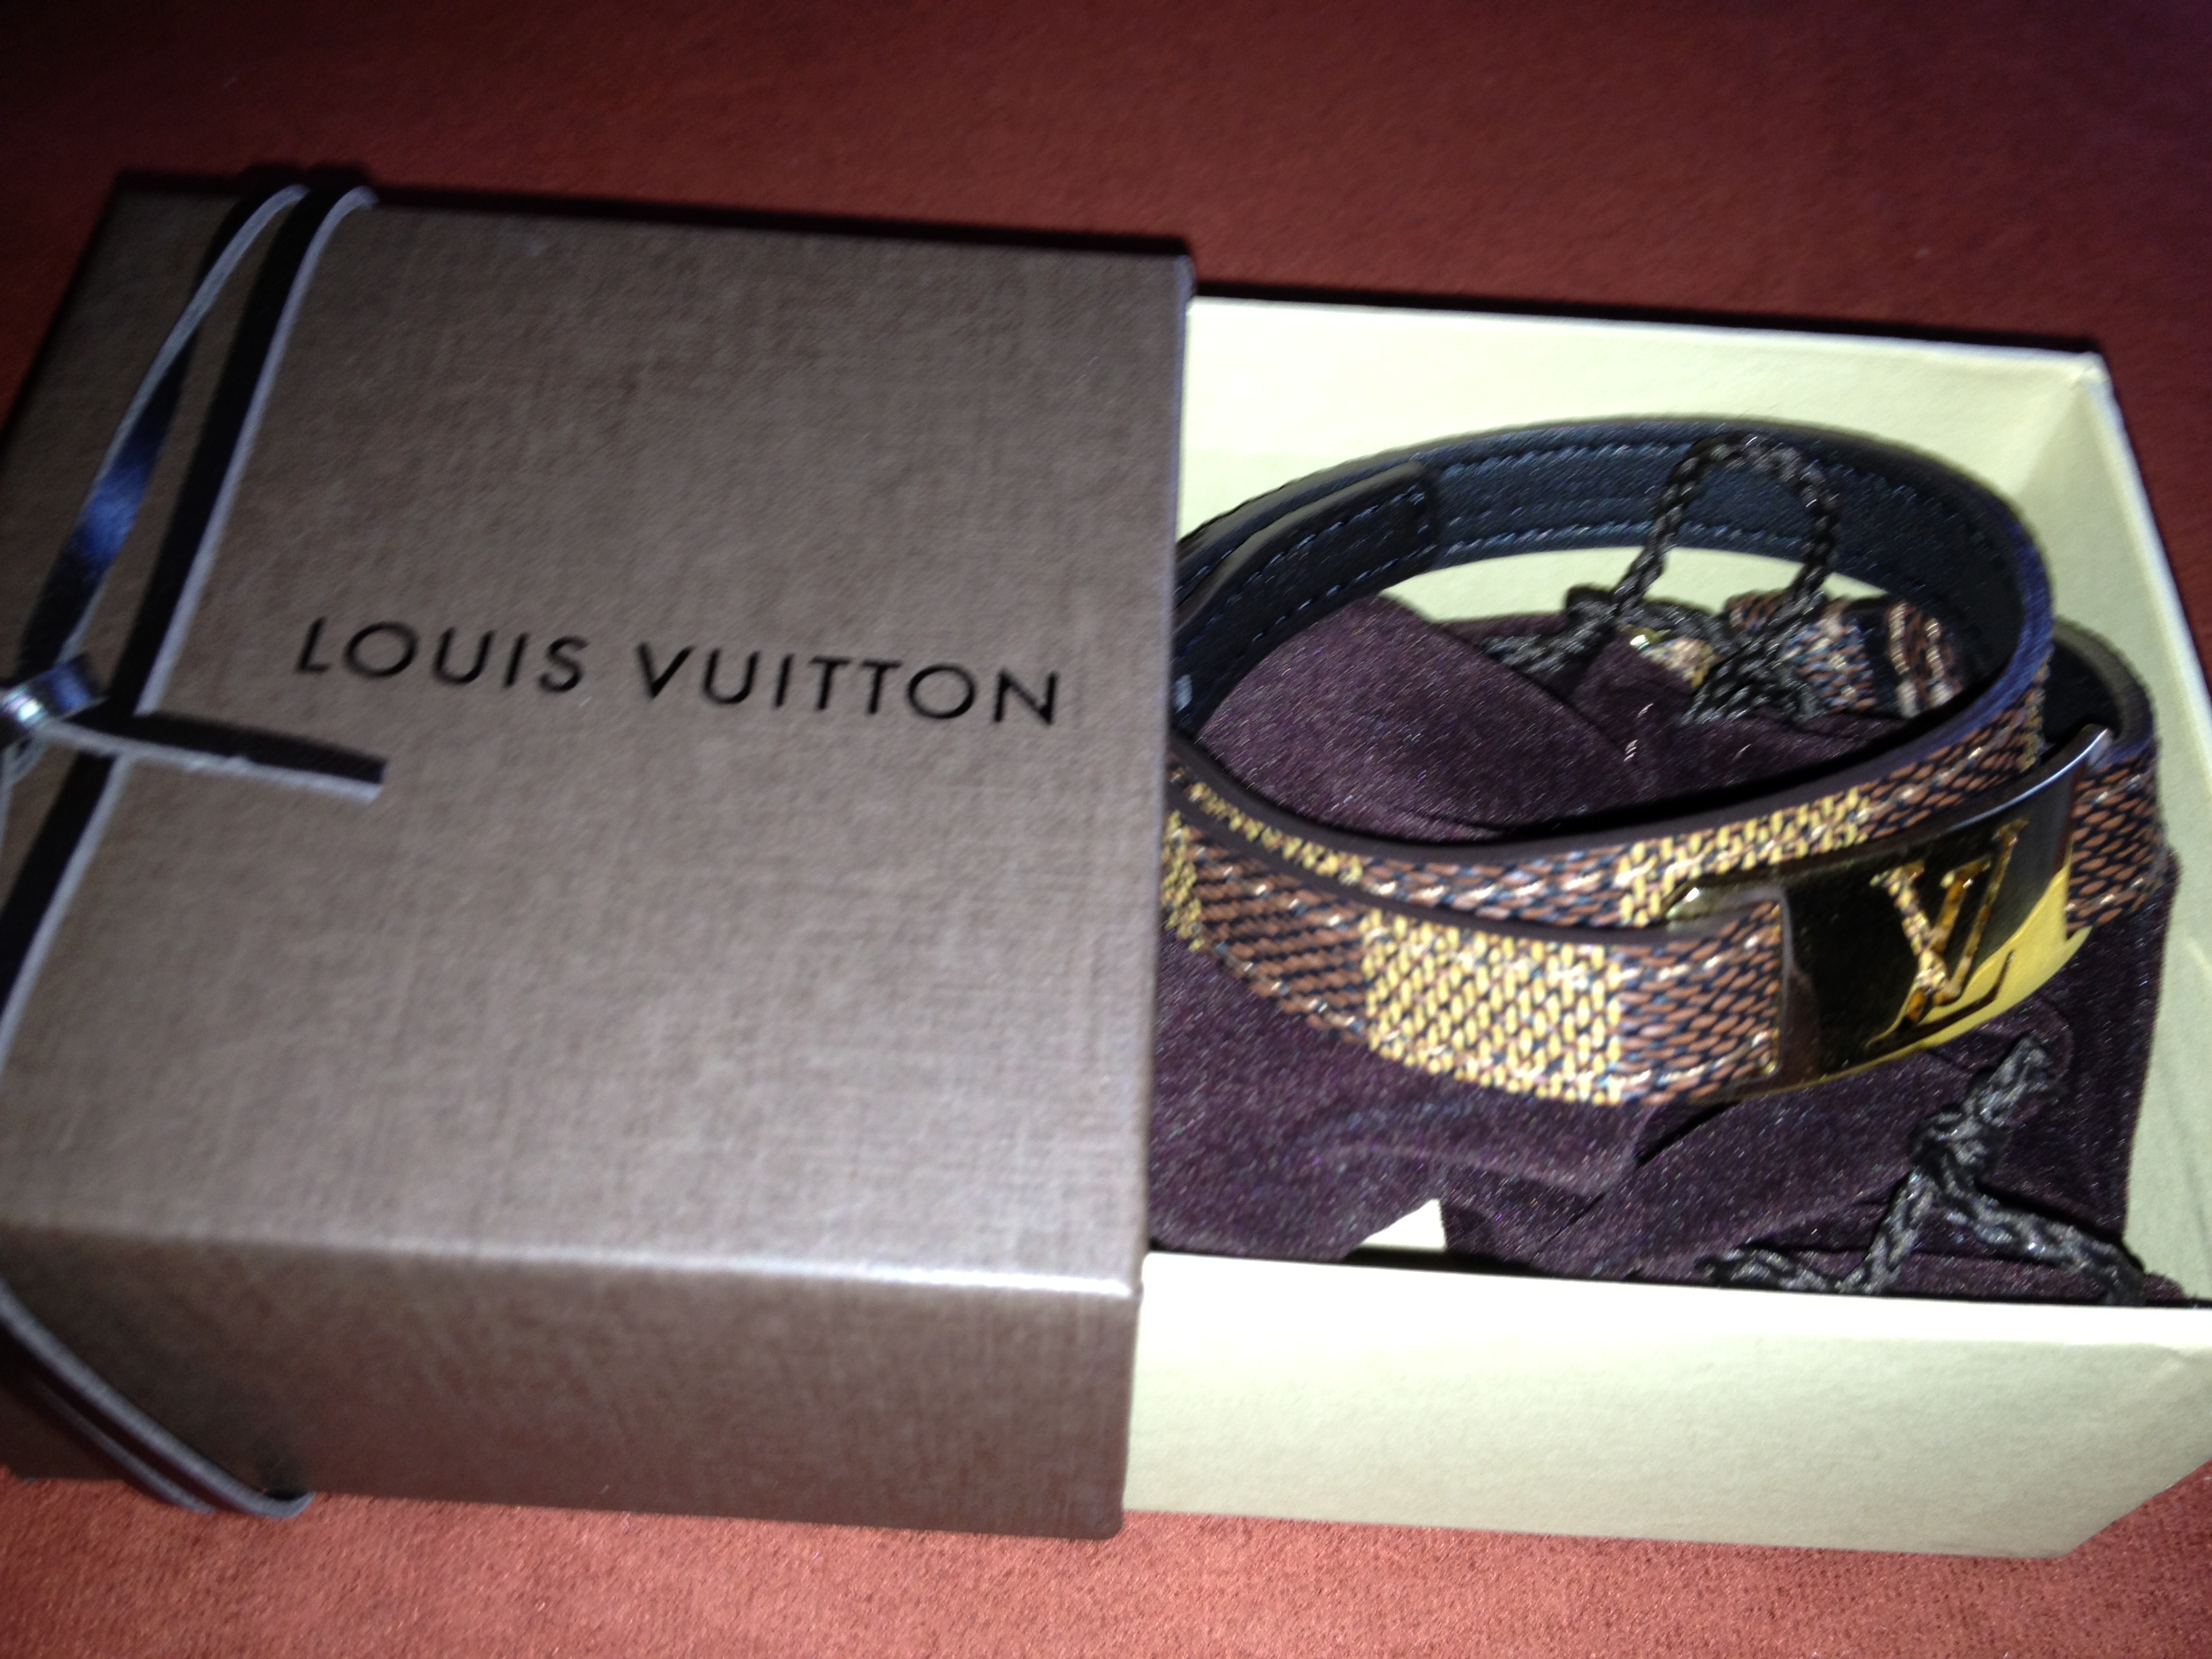 Louis Vuitton “Sign it” Bracelet | His Fashion Blog